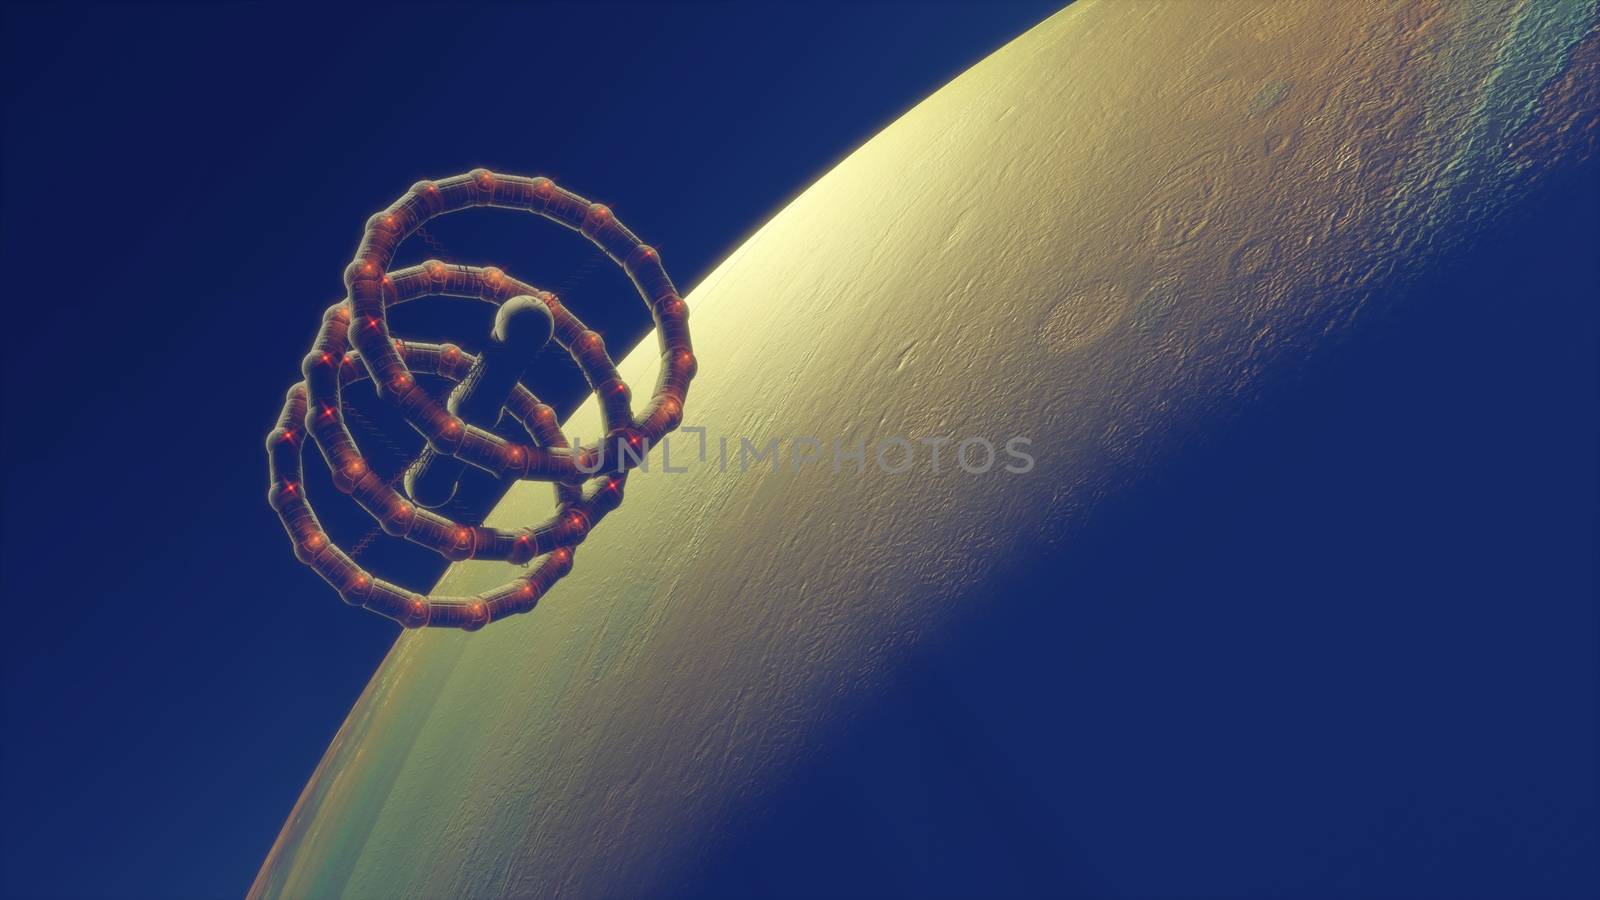 Spacestation orbital flying over exoplanet. 3d illustration.